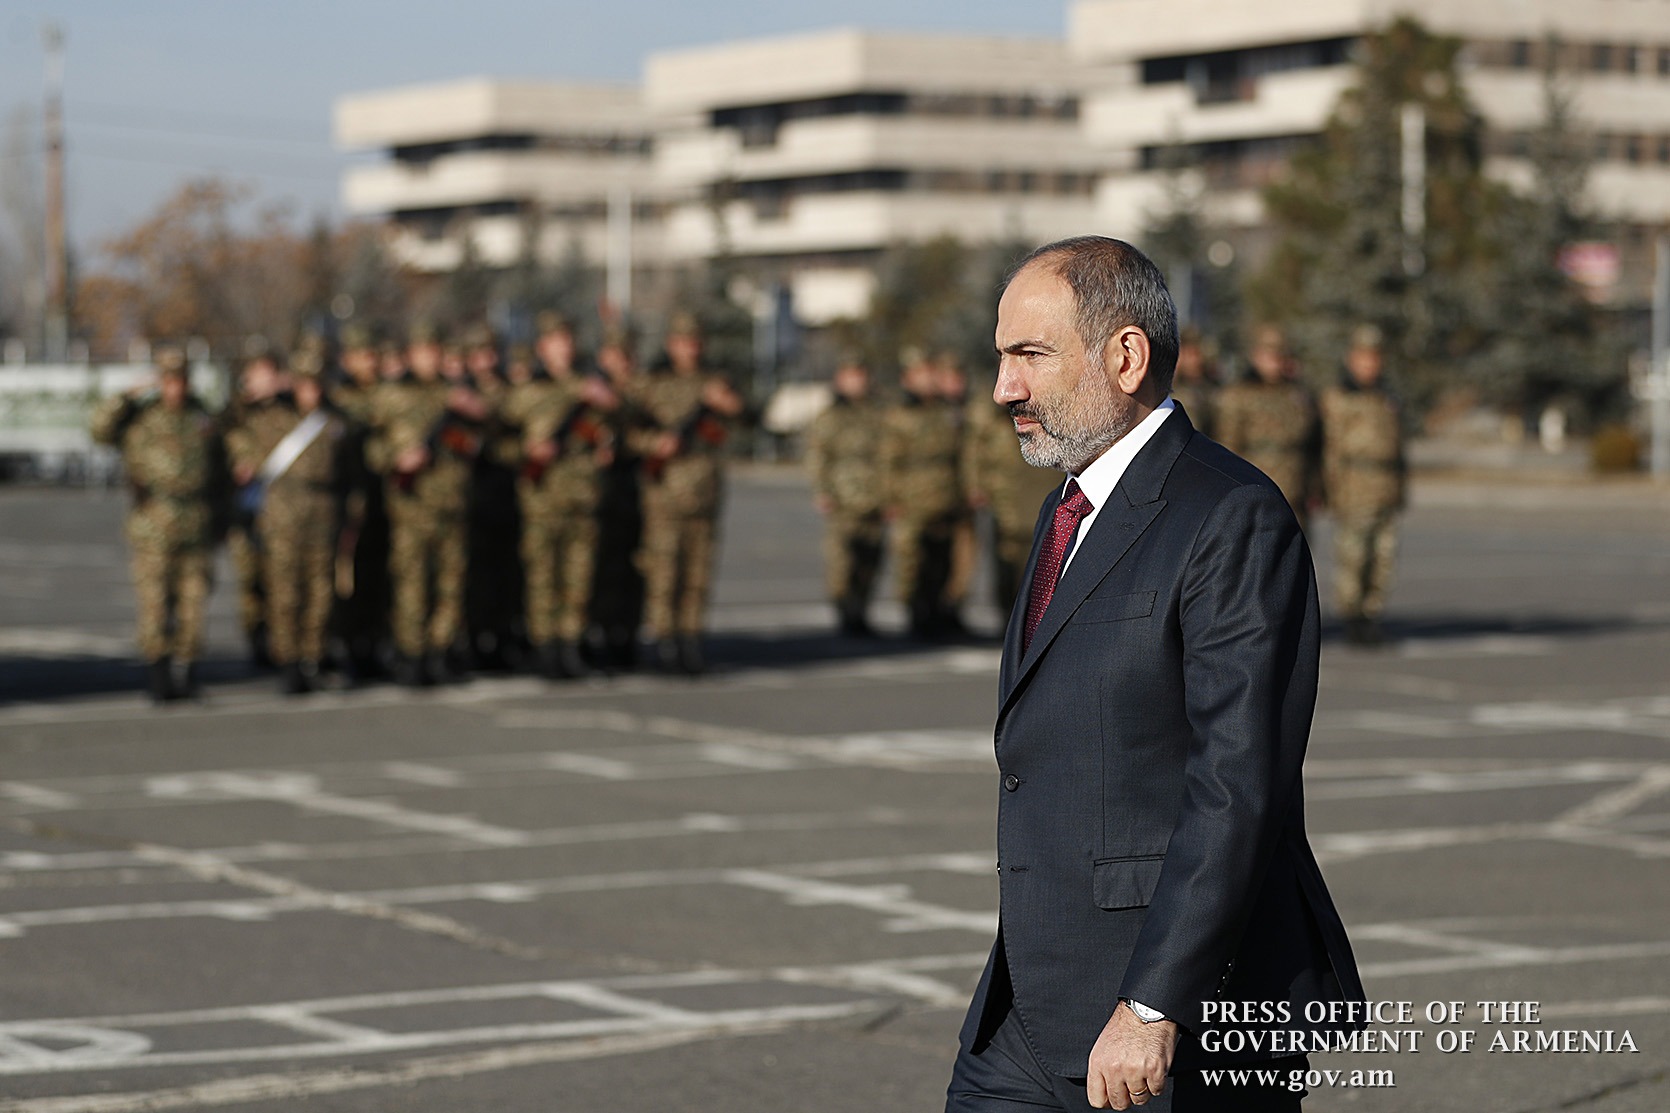 ՁայնաZOOM. Վեց ամիս անց Հայաստանում վերացվում է ռազմական դրությունը